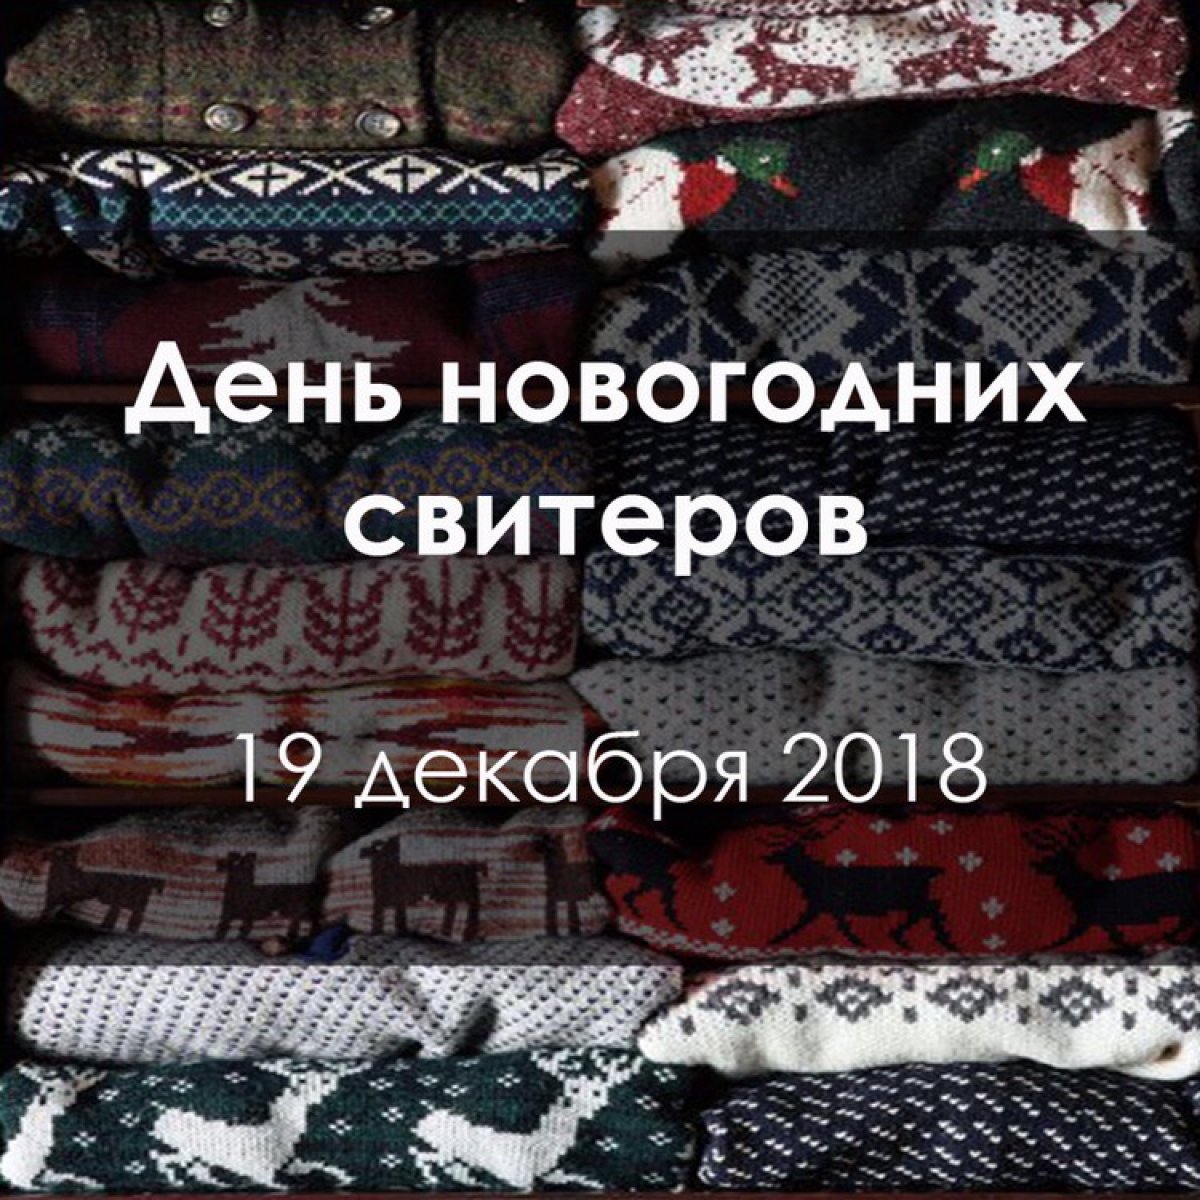 19 декабря в Институте стран Востока пройдет день новогодних свитеров